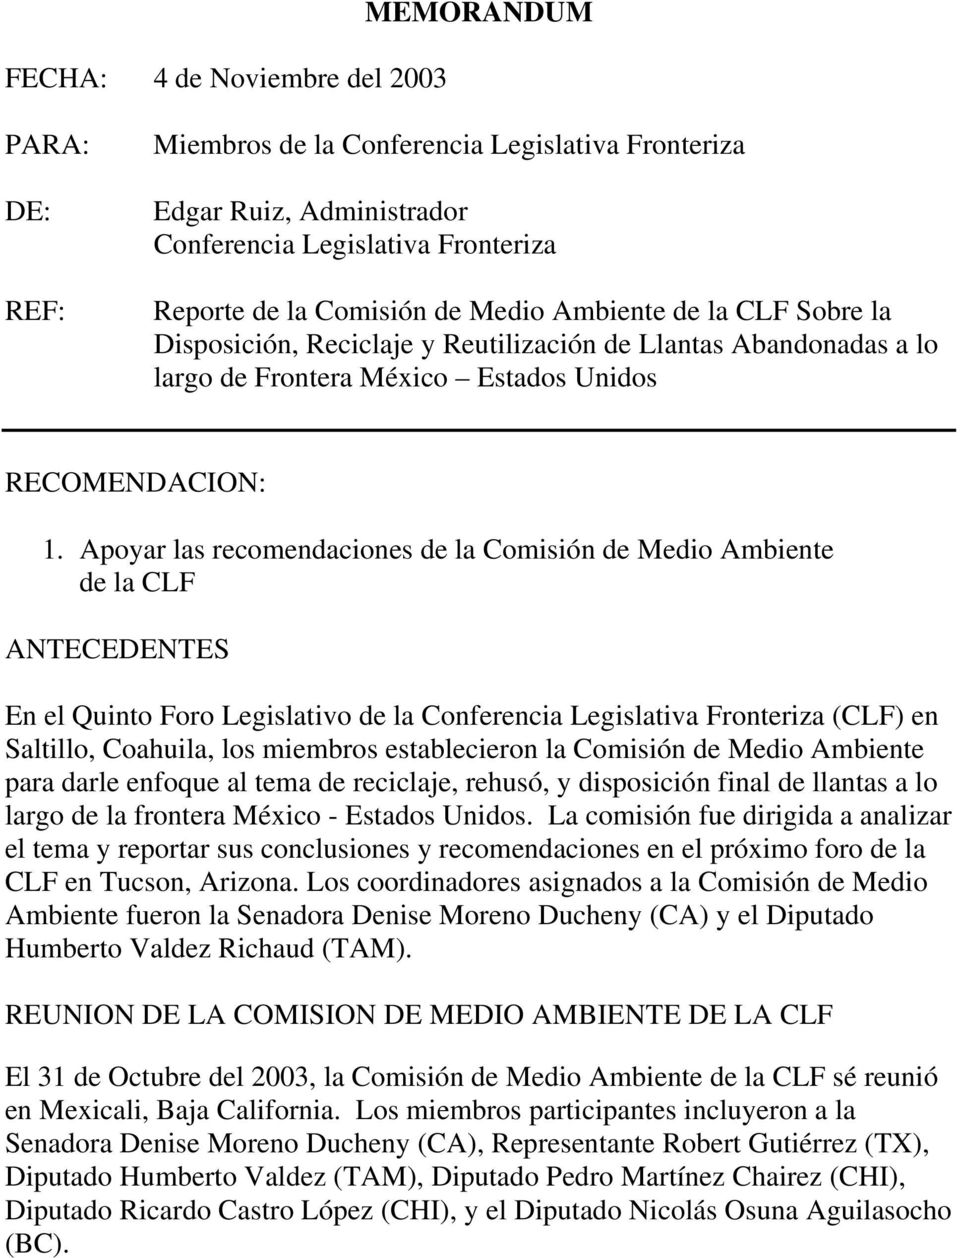 Apoyar las recomendaciones de la Comisión de Medio Ambiente de la CLF ANTECEDENTES En el Quinto Foro Legislativo de la Conferencia Legislativa Fronteriza (CLF) en Saltillo, Coahuila, los miembros